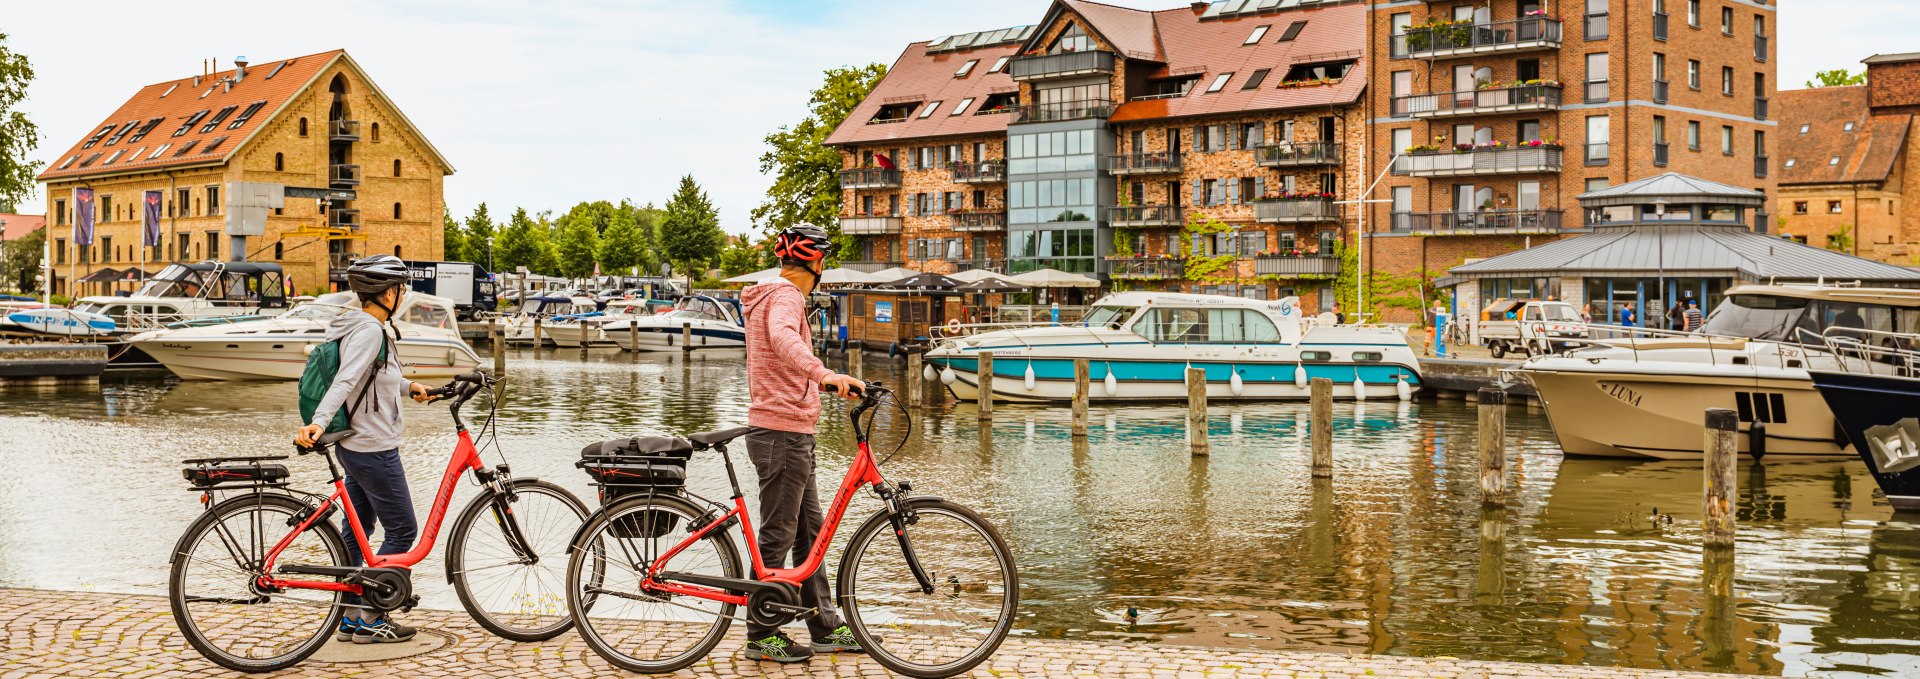 Hier treffen sich Rad- und Bootstouristen., © TMV/Tiemann